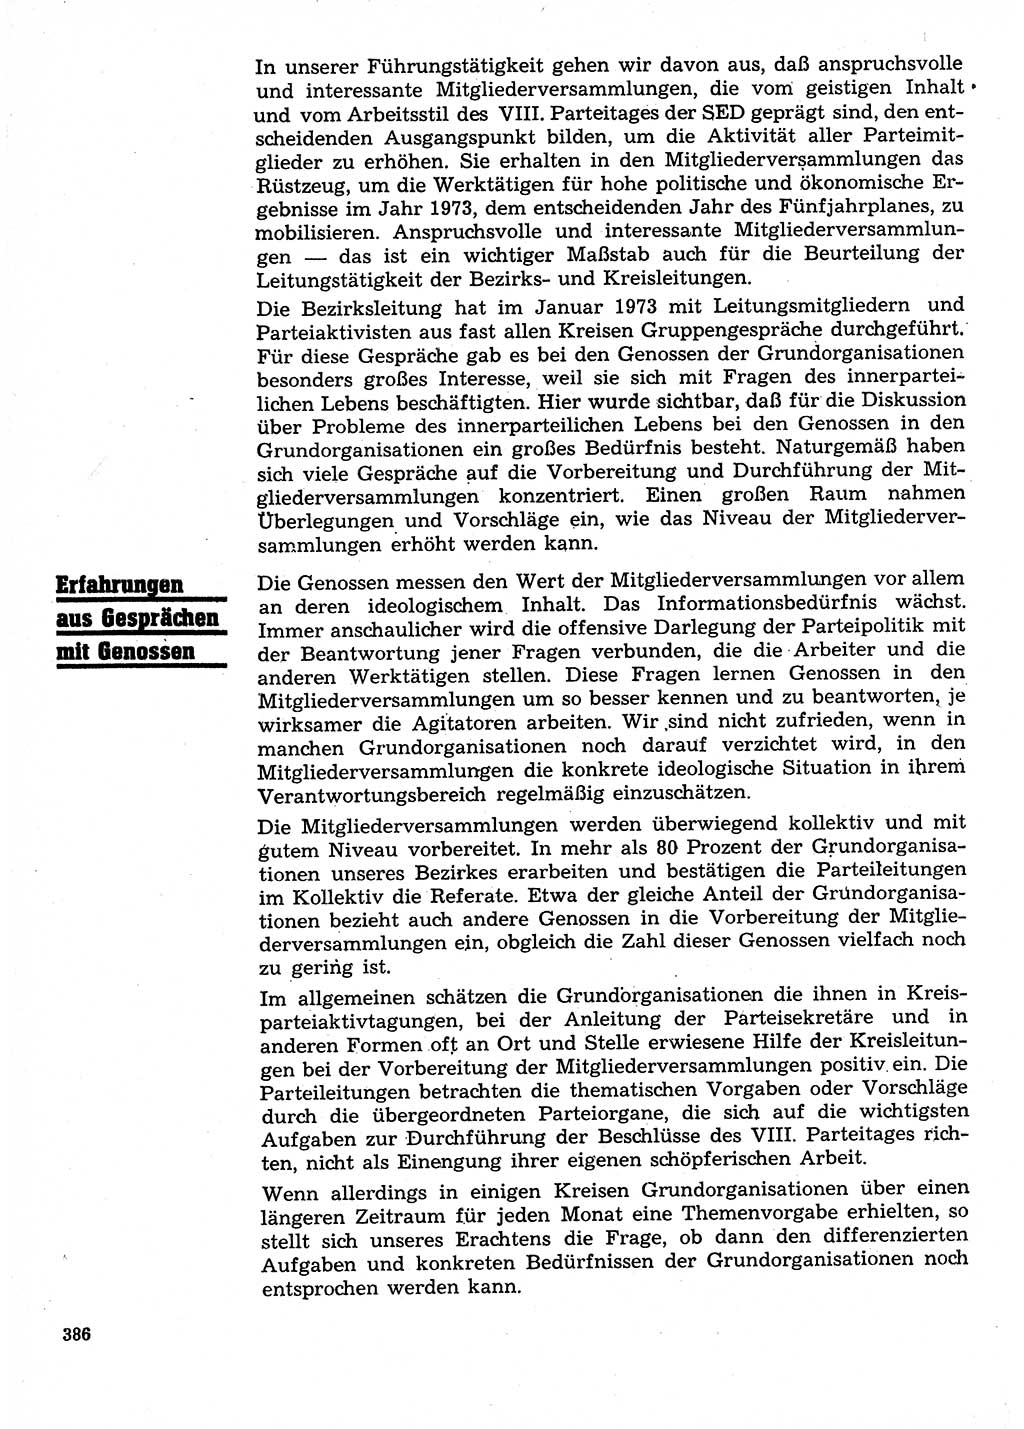 Neuer Weg (NW), Organ des Zentralkomitees (ZK) der SED (Sozialistische Einheitspartei Deutschlands) für Fragen des Parteilebens, 28. Jahrgang [Deutsche Demokratische Republik (DDR)] 1973, Seite 386 (NW ZK SED DDR 1973, S. 386)